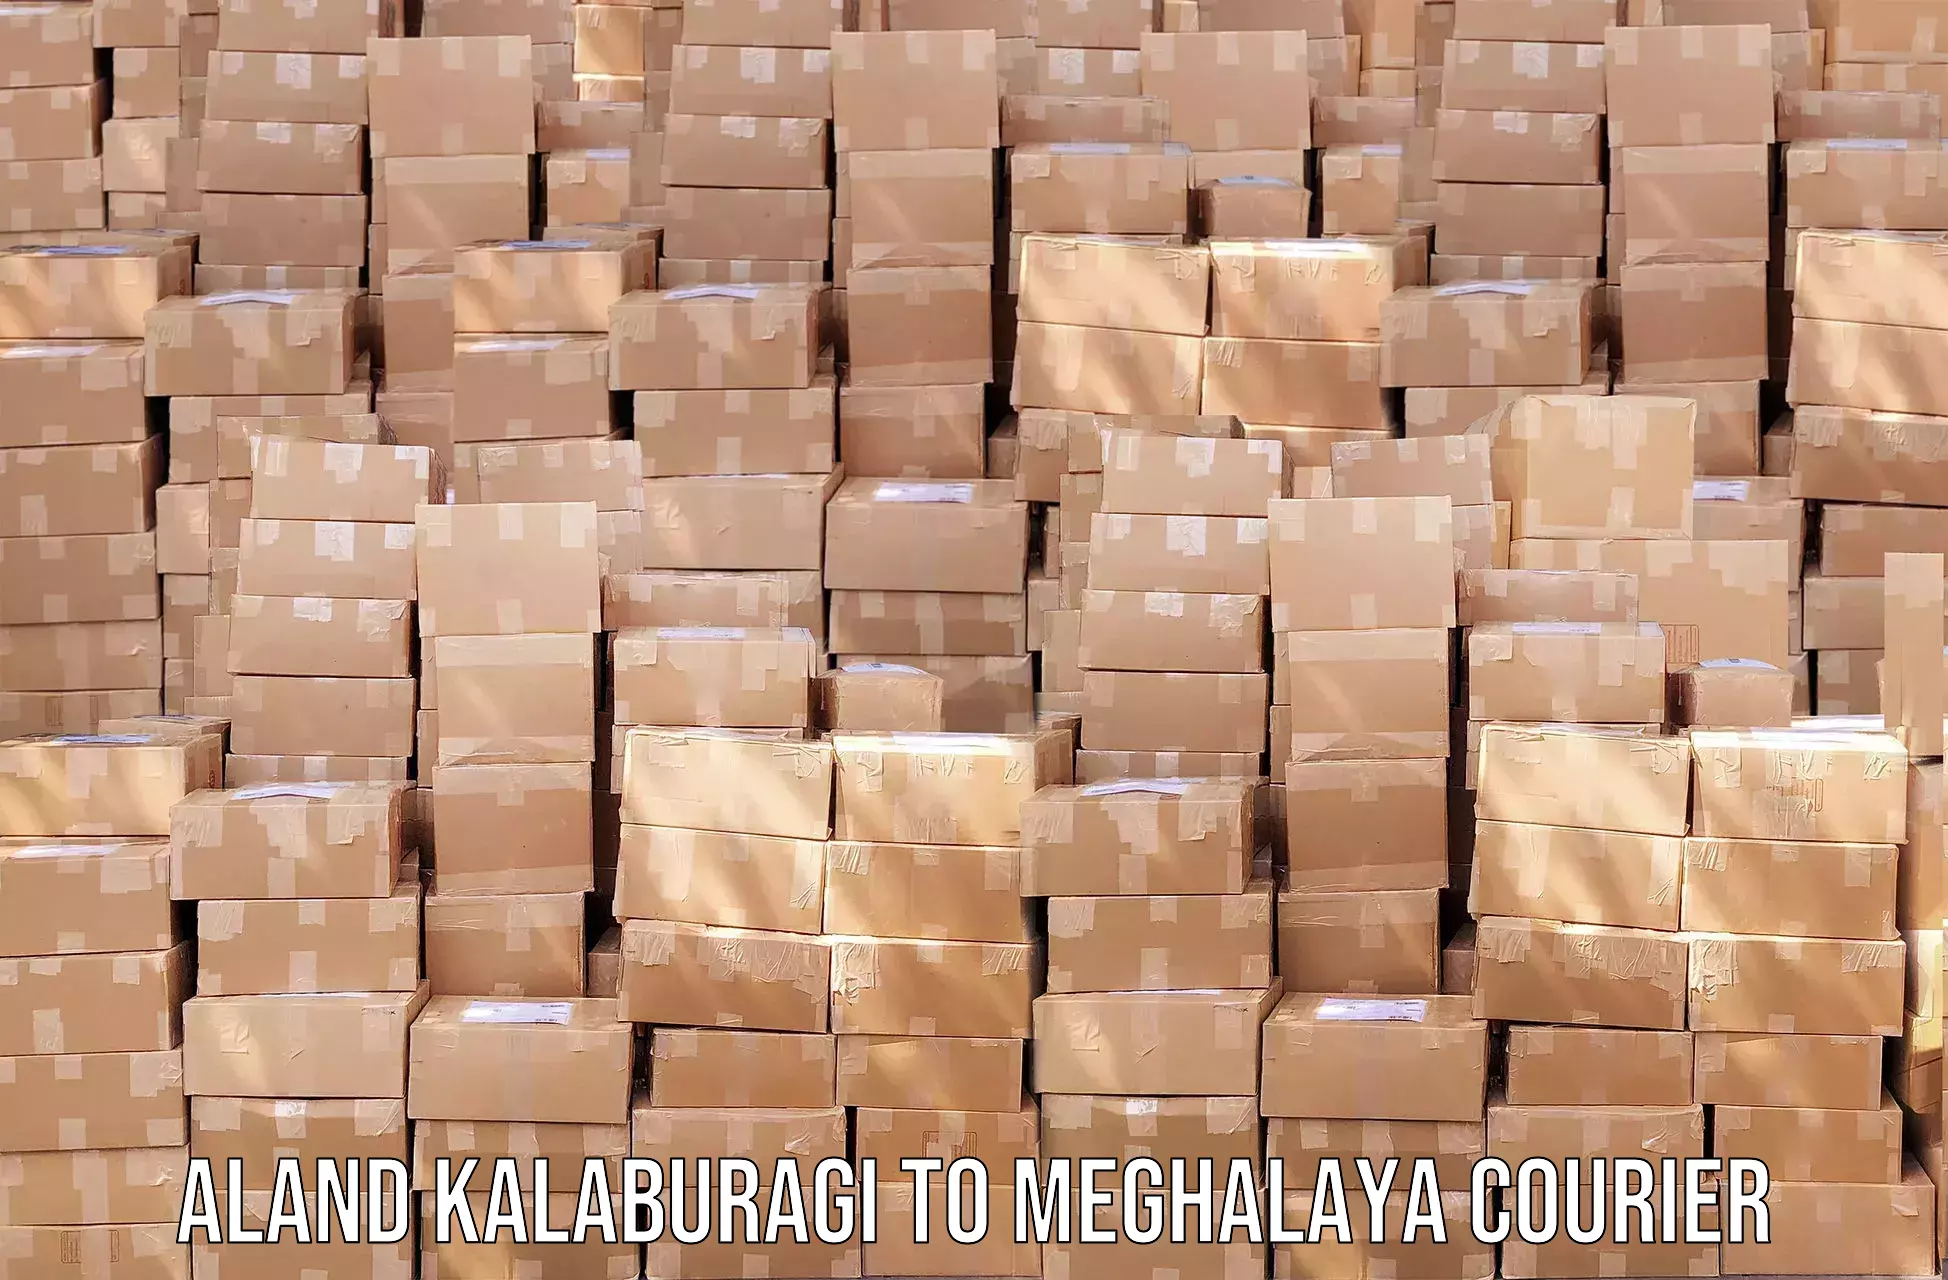 Express logistics Aland Kalaburagi to NIT Meghalaya